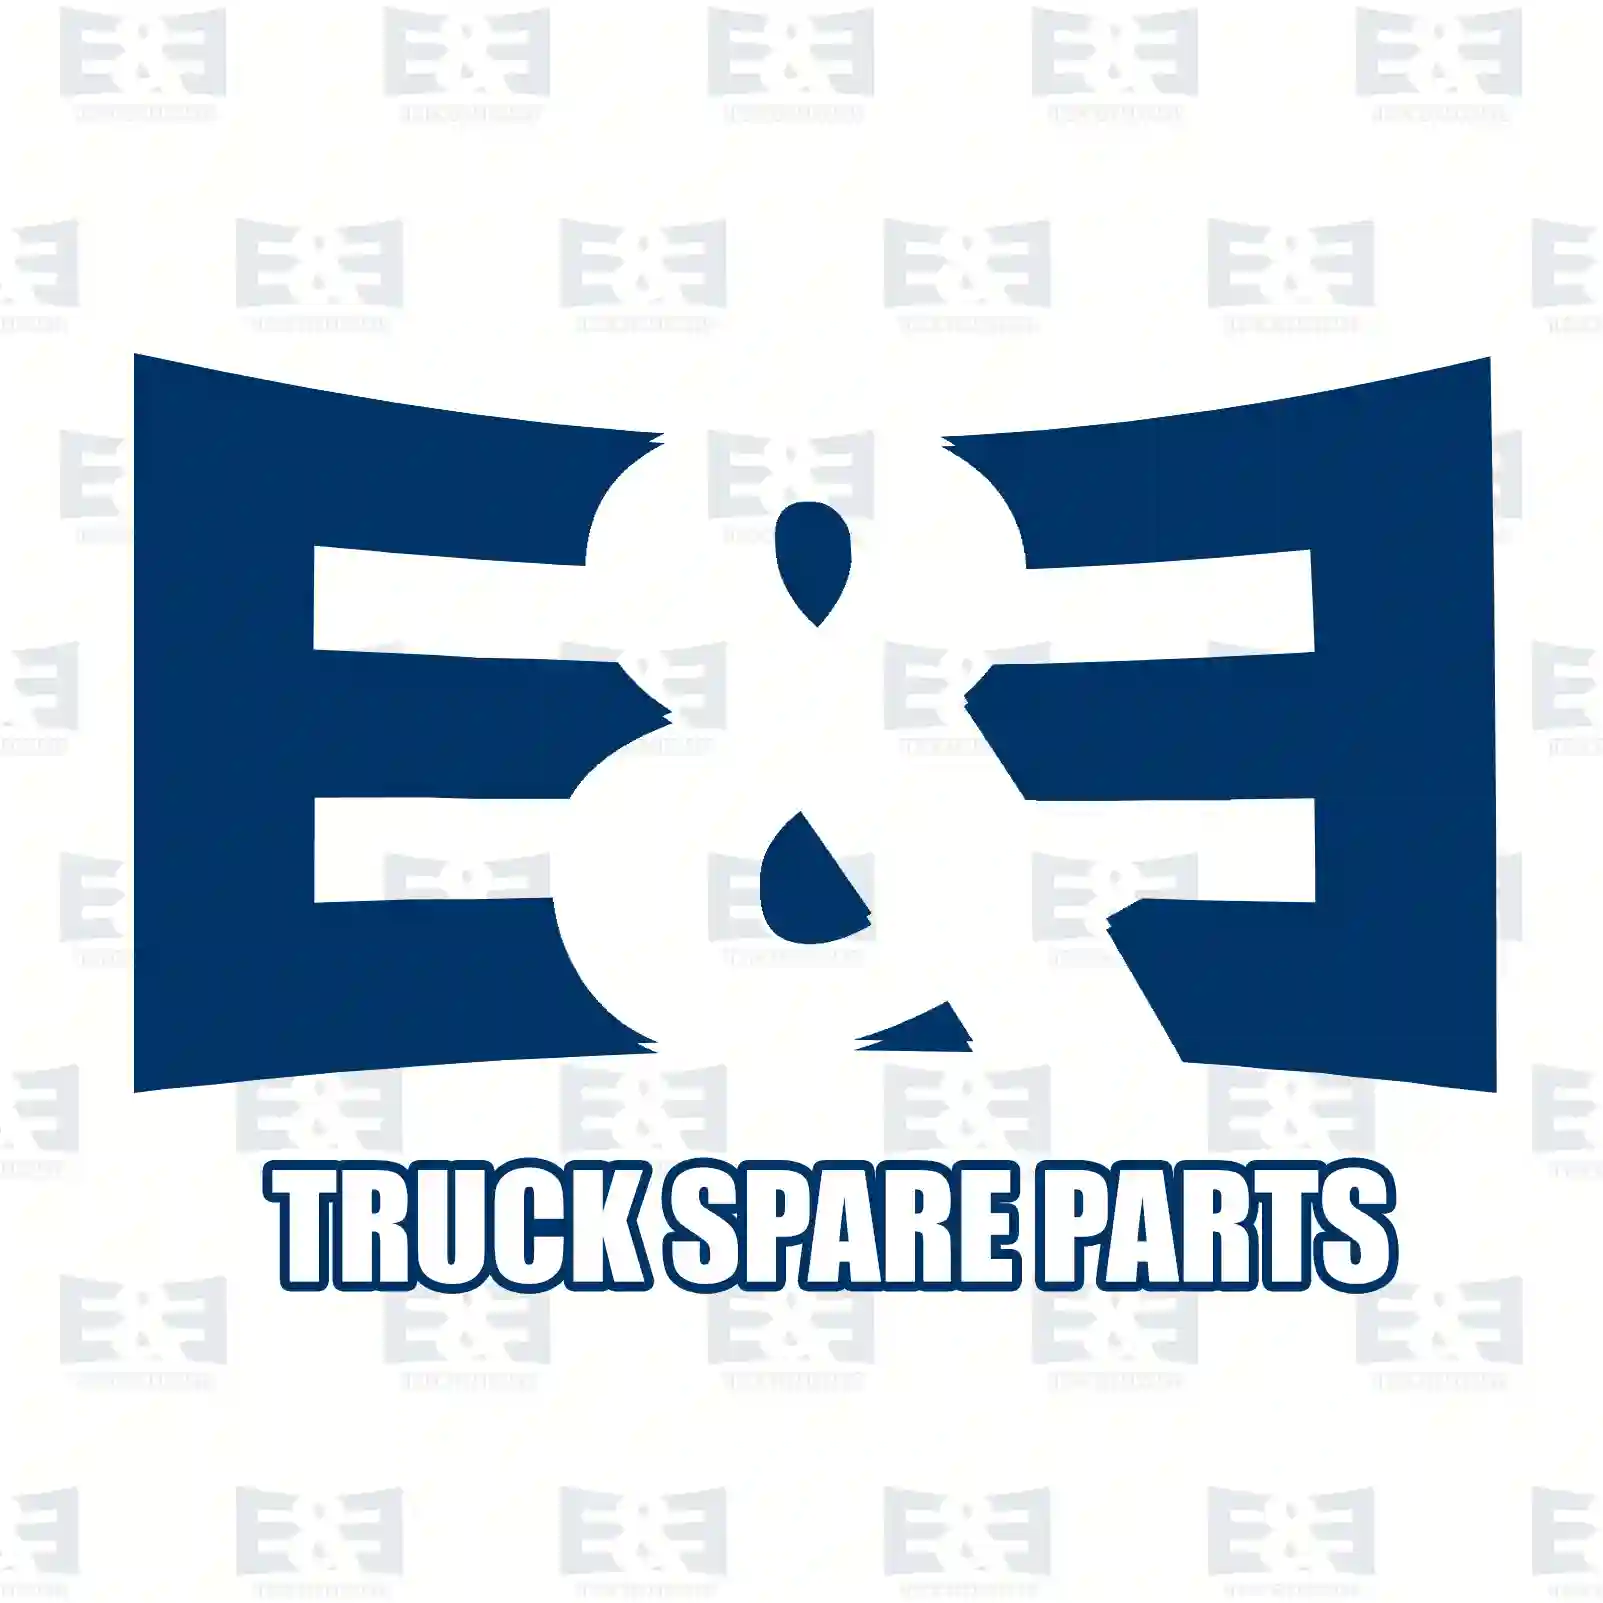 Main mirror, heated, 2E2292088, 650361, 892896, 7723617, 42209401, 81637306209, 88637306030, 0008102316, 3018102116, 3818102616, 3818107316, 6738100916, 6738104216, 6777971, 6793880 ||  2E2292088 E&E Truck Spare Parts | Truck Spare Parts, Auotomotive Spare Parts Main mirror, heated, 2E2292088, 650361, 892896, 7723617, 42209401, 81637306209, 88637306030, 0008102316, 3018102116, 3818102616, 3818107316, 6738100916, 6738104216, 6777971, 6793880 ||  2E2292088 E&E Truck Spare Parts | Truck Spare Parts, Auotomotive Spare Parts